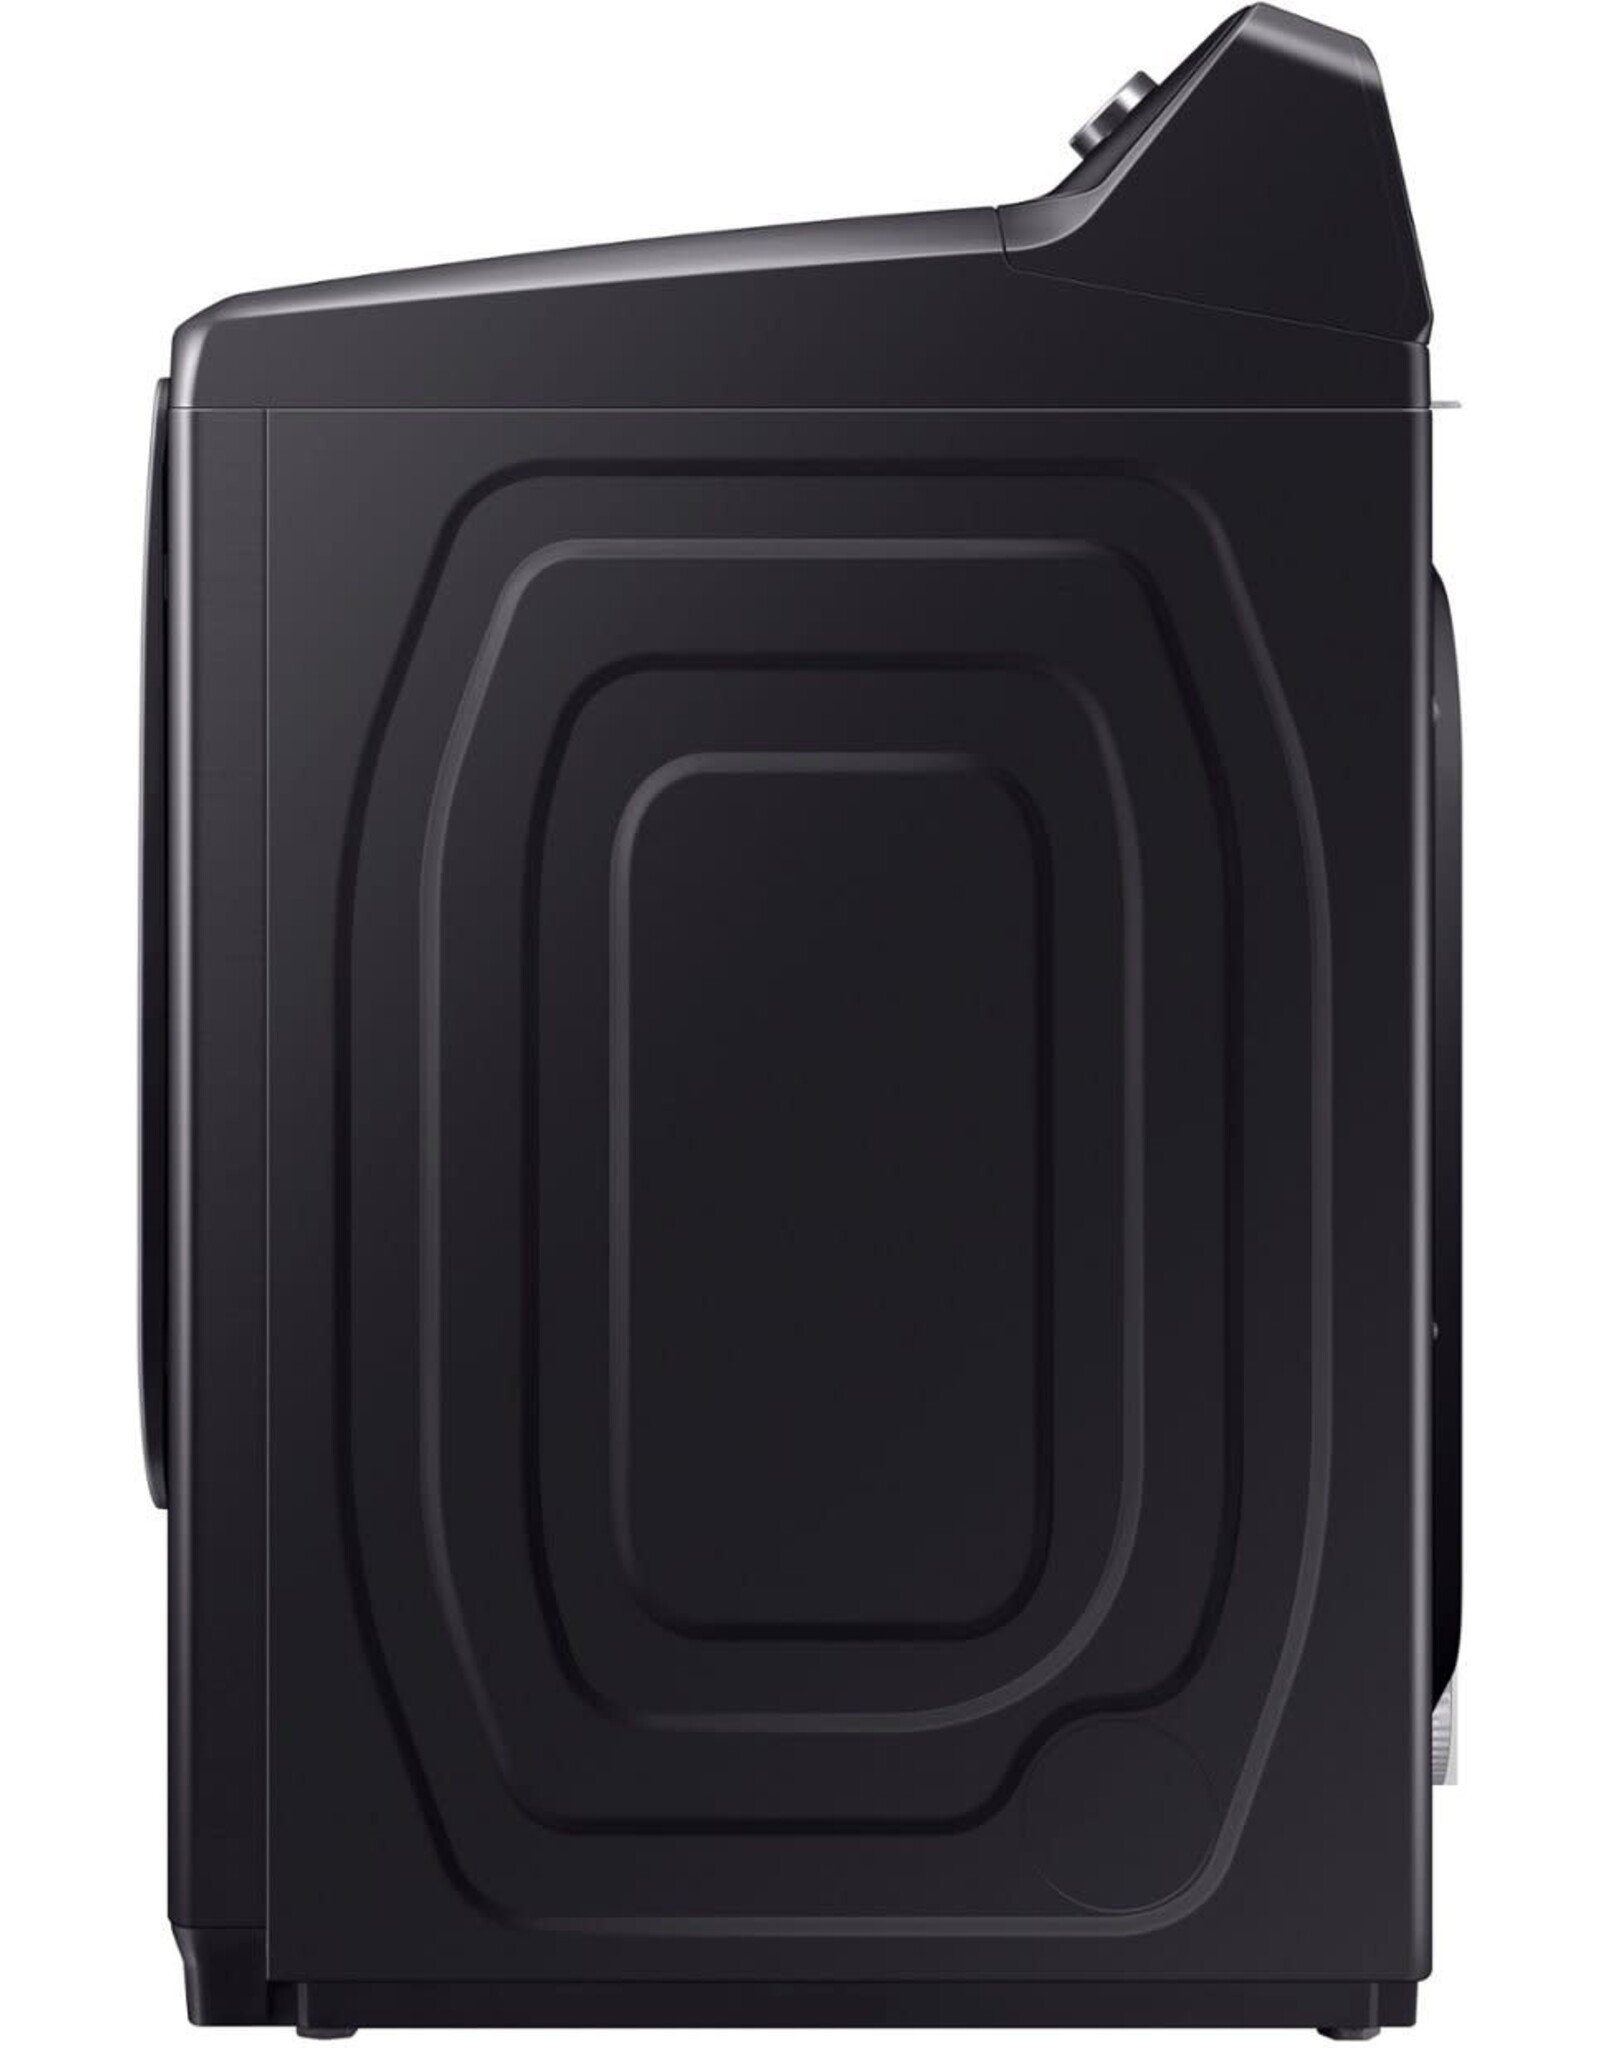 SAMSUNG DVG50B5100V Samsung 7.4-cu ft Reversible Side Swing Door Gas Dryer (Brushed Black)